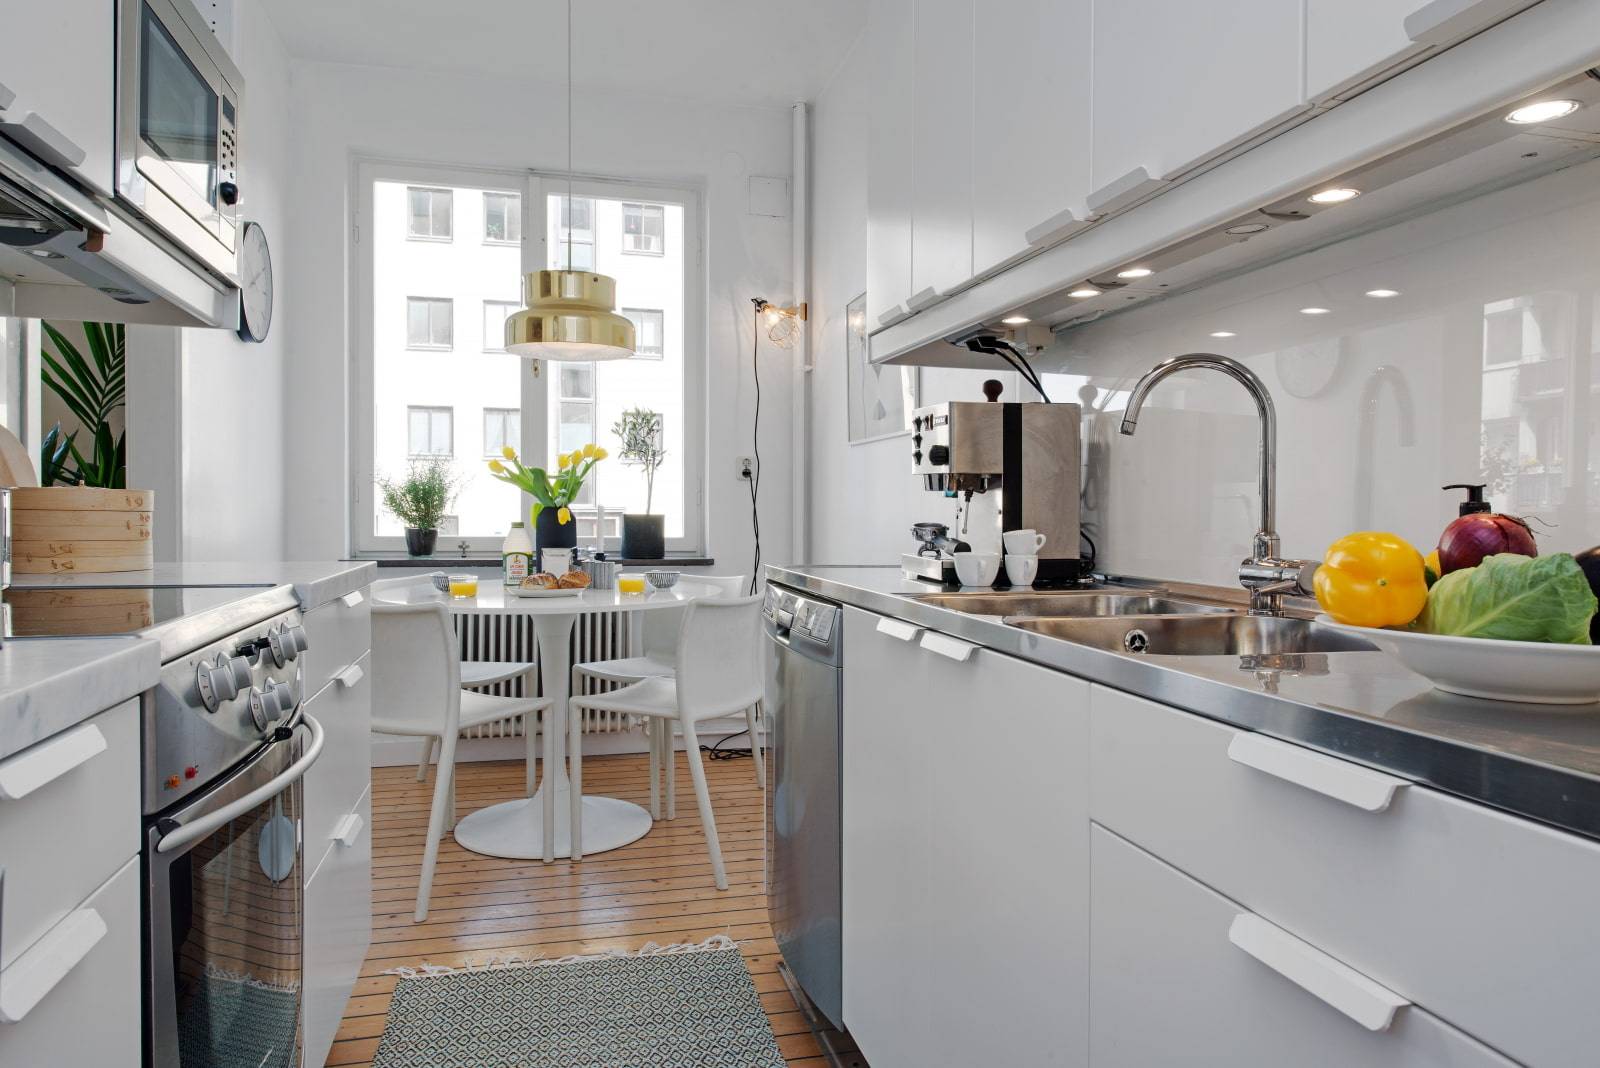 Дизайн небольшой кухни-гостиной 30-40 кв м с примерами